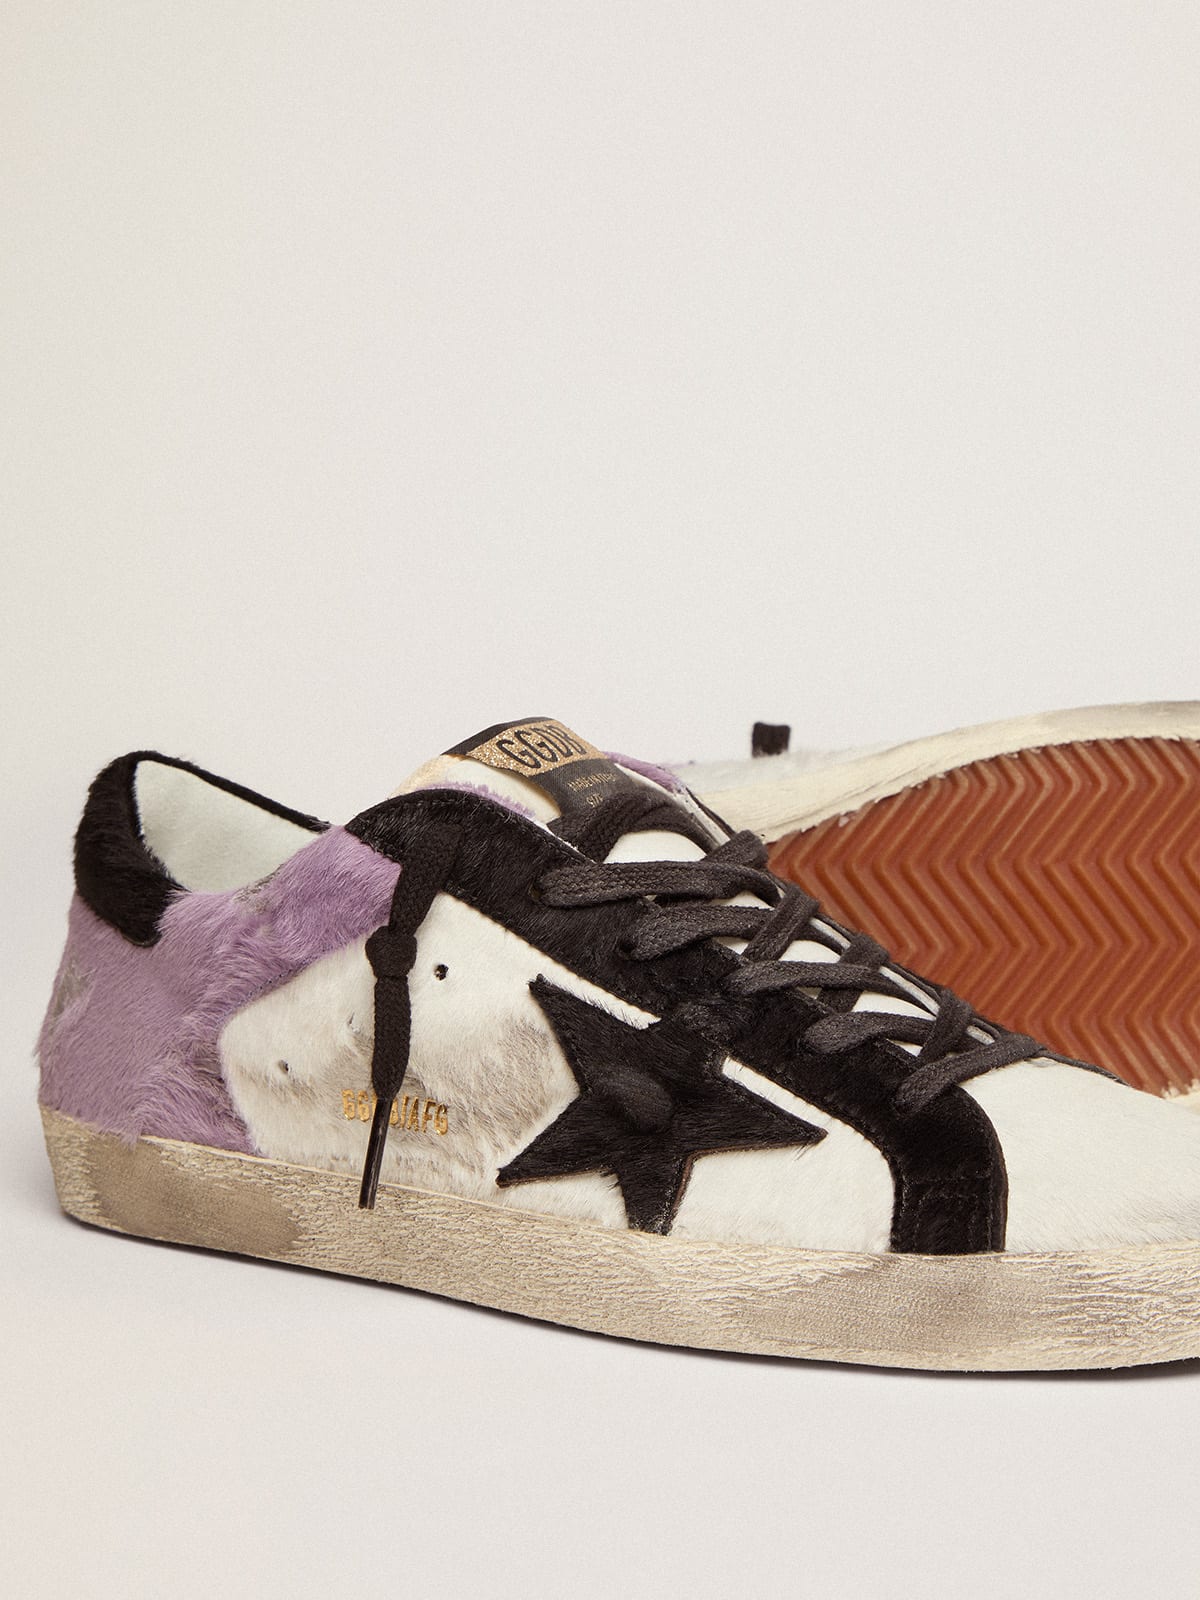 Golden Goose - Sneakers Super-Star en cuir façon poulain blanc et lilas avec empiècements en cuir façon poulain noir in 